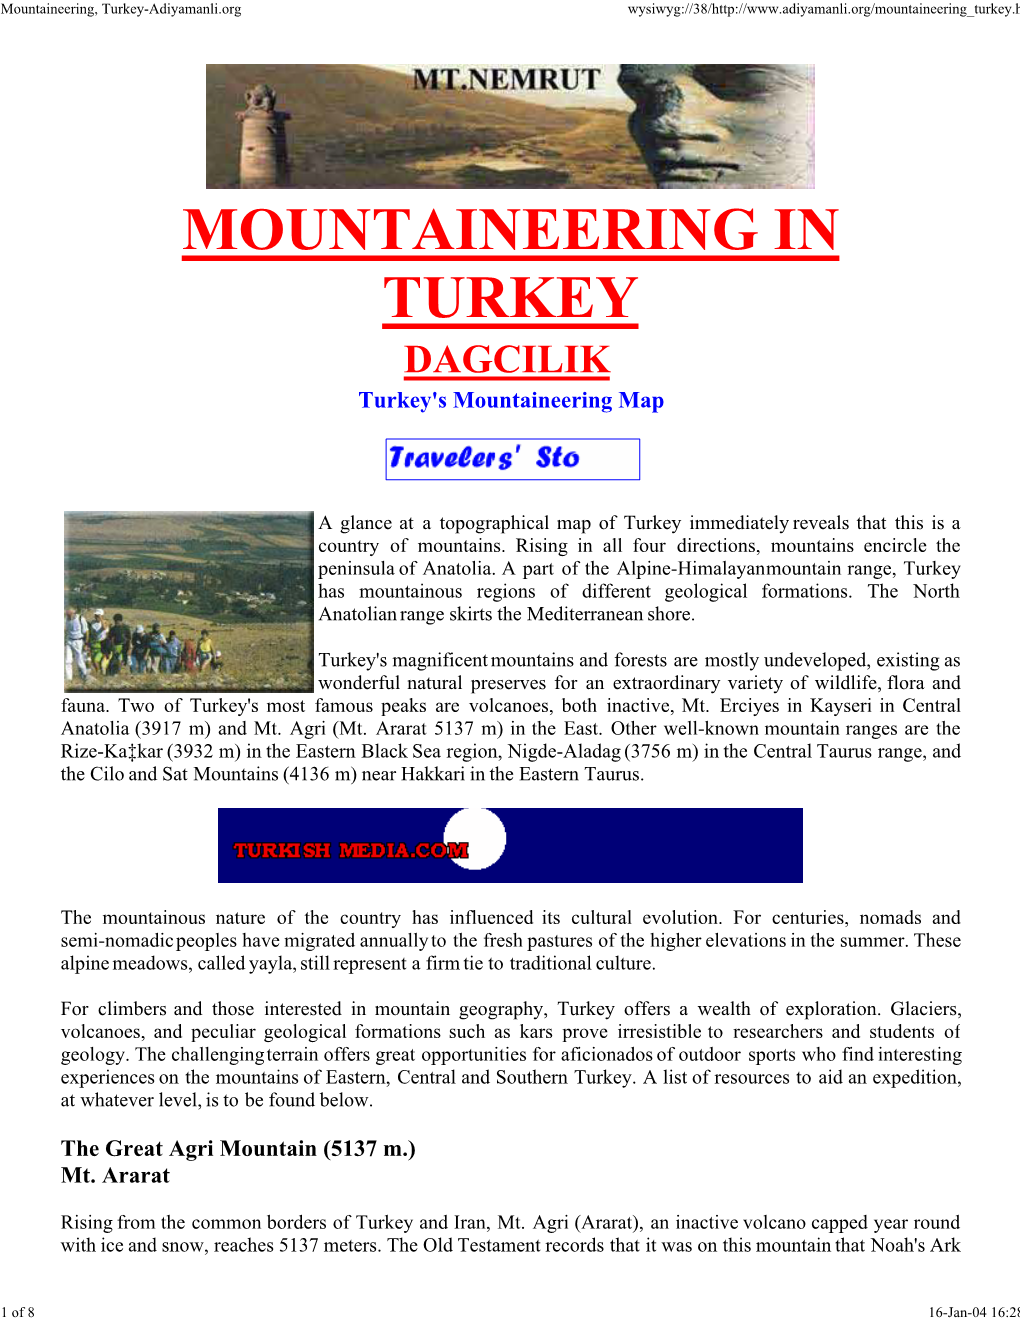 MOUNTAINEERING in TURKEY DAGCILIK Turkey's Mountaineering Map